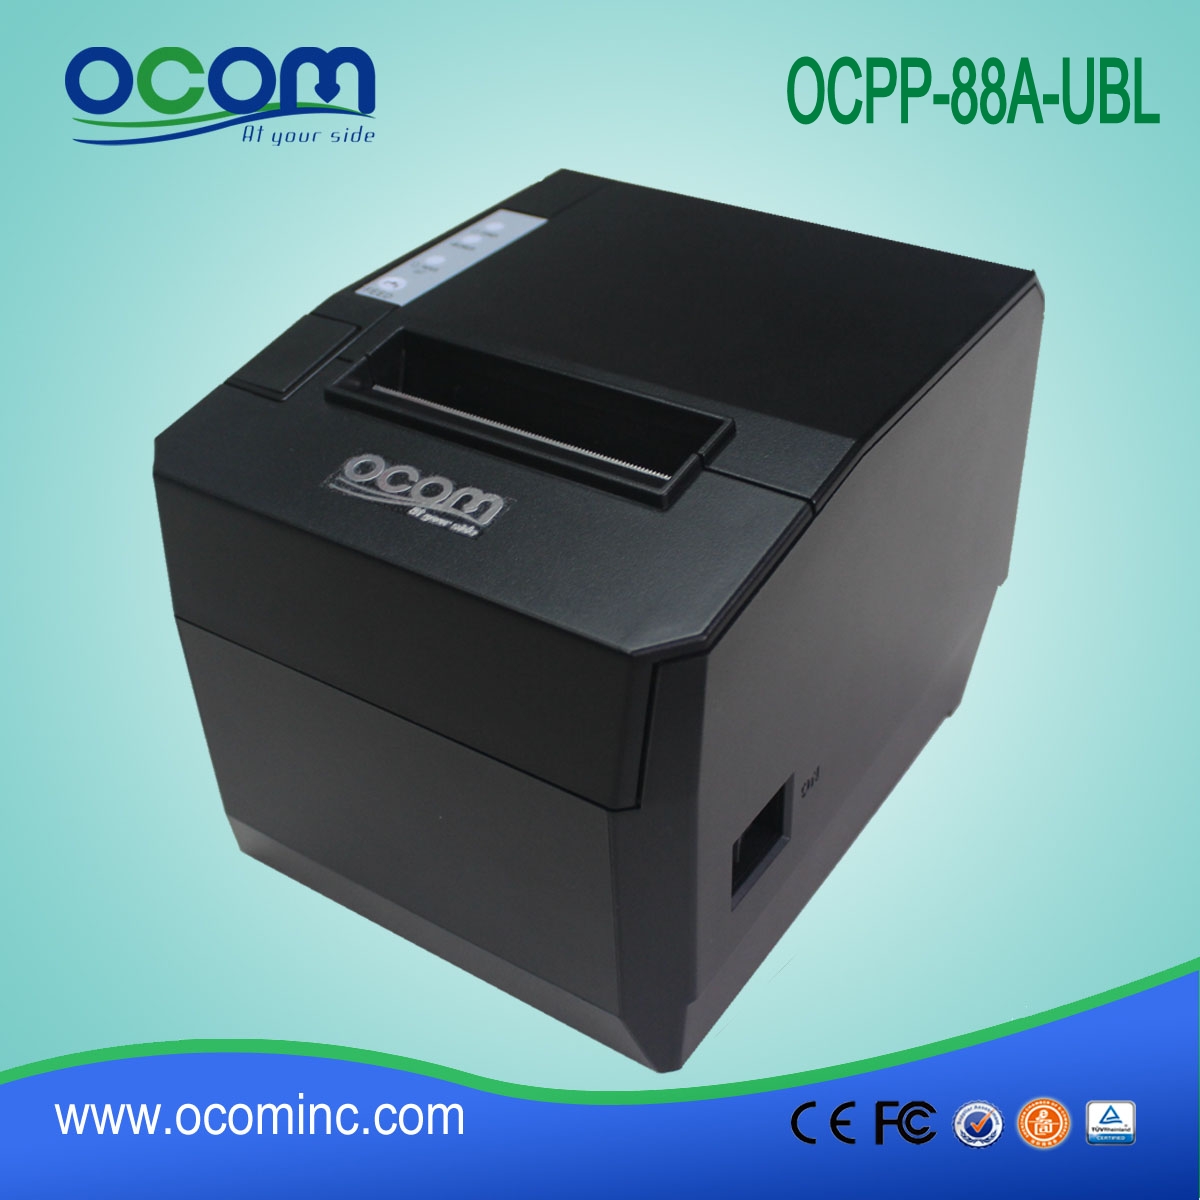 OCPP-88A Impostazione facilitata Stampante termica per ricevute ristorante da 80 mm con taglio automatico